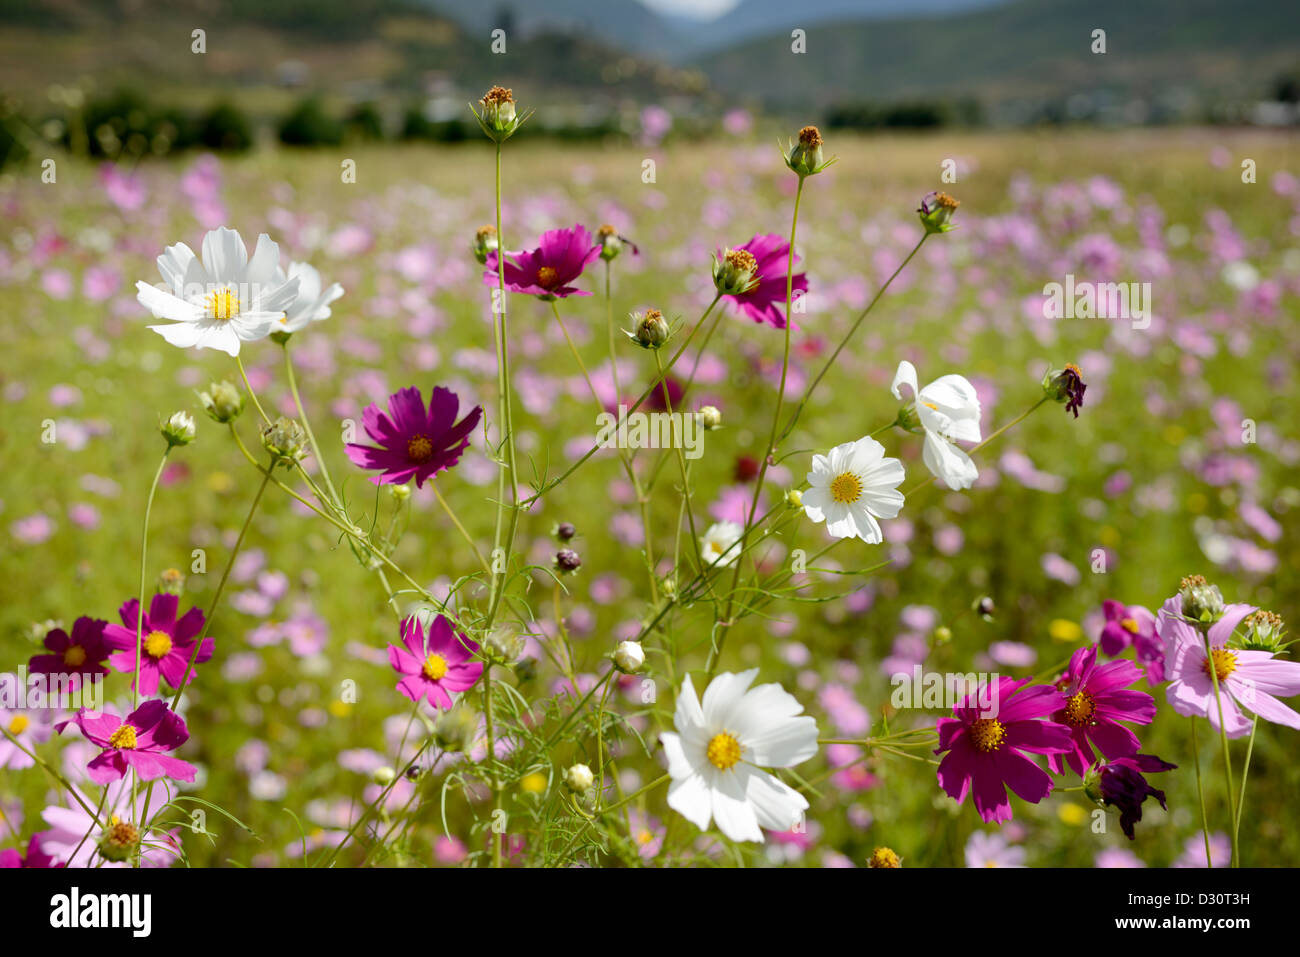 Wilde Blumen wachsen auf einer Wiese nur Momente von Bhutan Flughafen., 36MPX Stockfoto